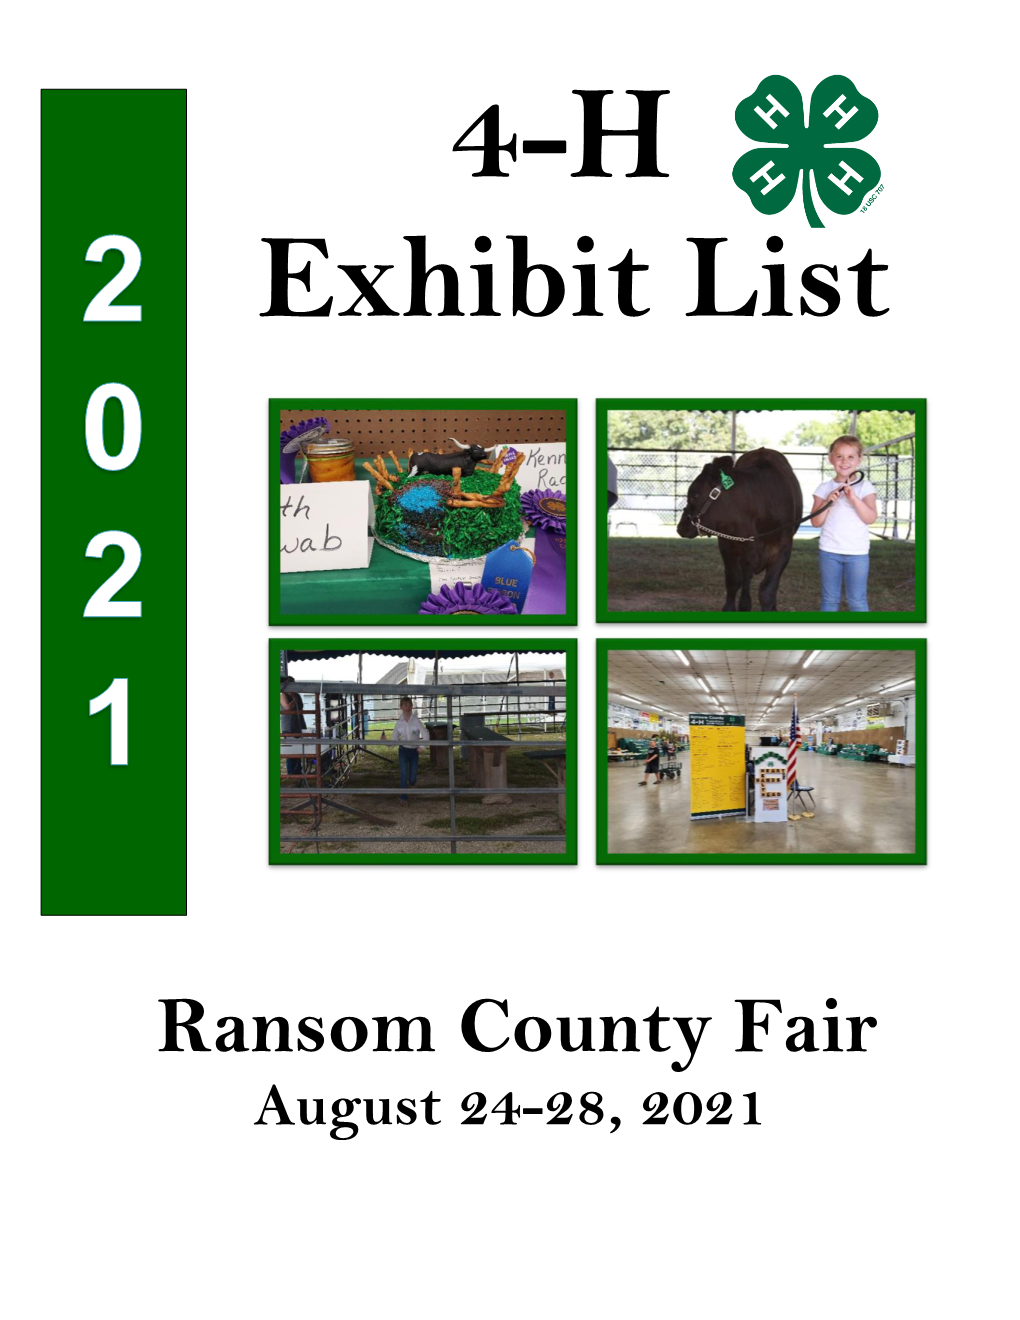 Ransom County Fair August 24-28, 2021